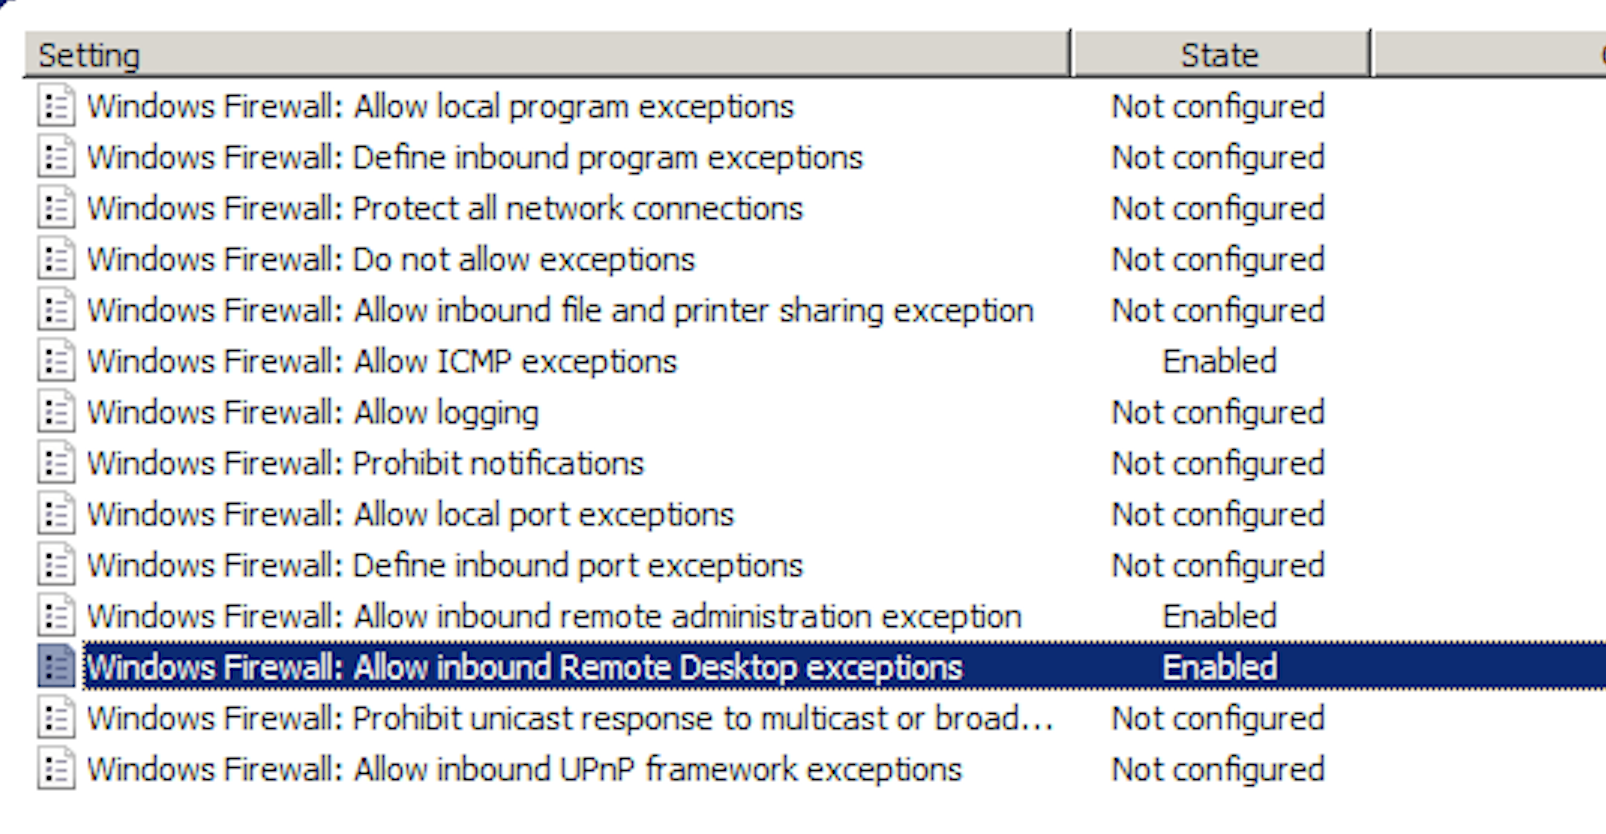 Allow inbound Remote Desktop exceptions